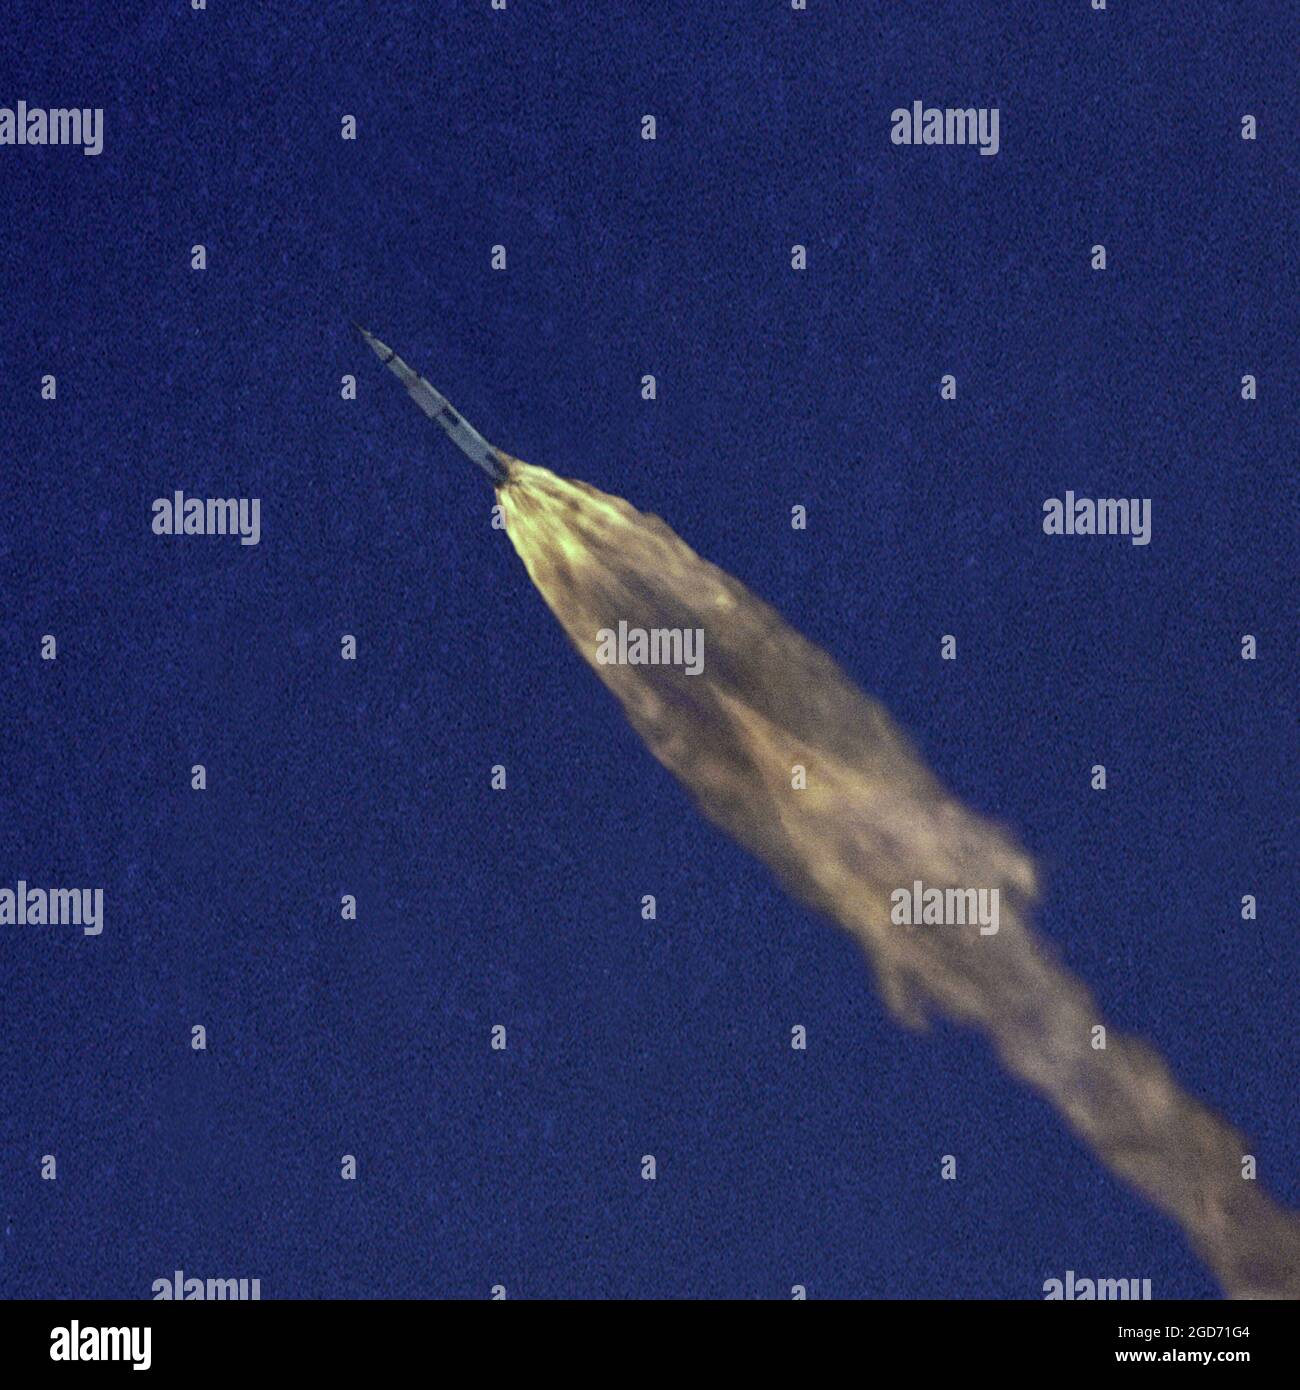 Il razzo Sauturn V in volo, che si avvicina allo spazio in un cielo blu chiaro con una coda enorme di fiamme, da Cape Canaveral in Florida. Questa è la missione Apollo 10 che è andata alla luna ma non è atterrata. Questa missione è stata una pratica completa per il viaggio di atterraggio sulla luna Apollo 11. Esso è stato lanciato il 18 maggio 1969 Foto Stock